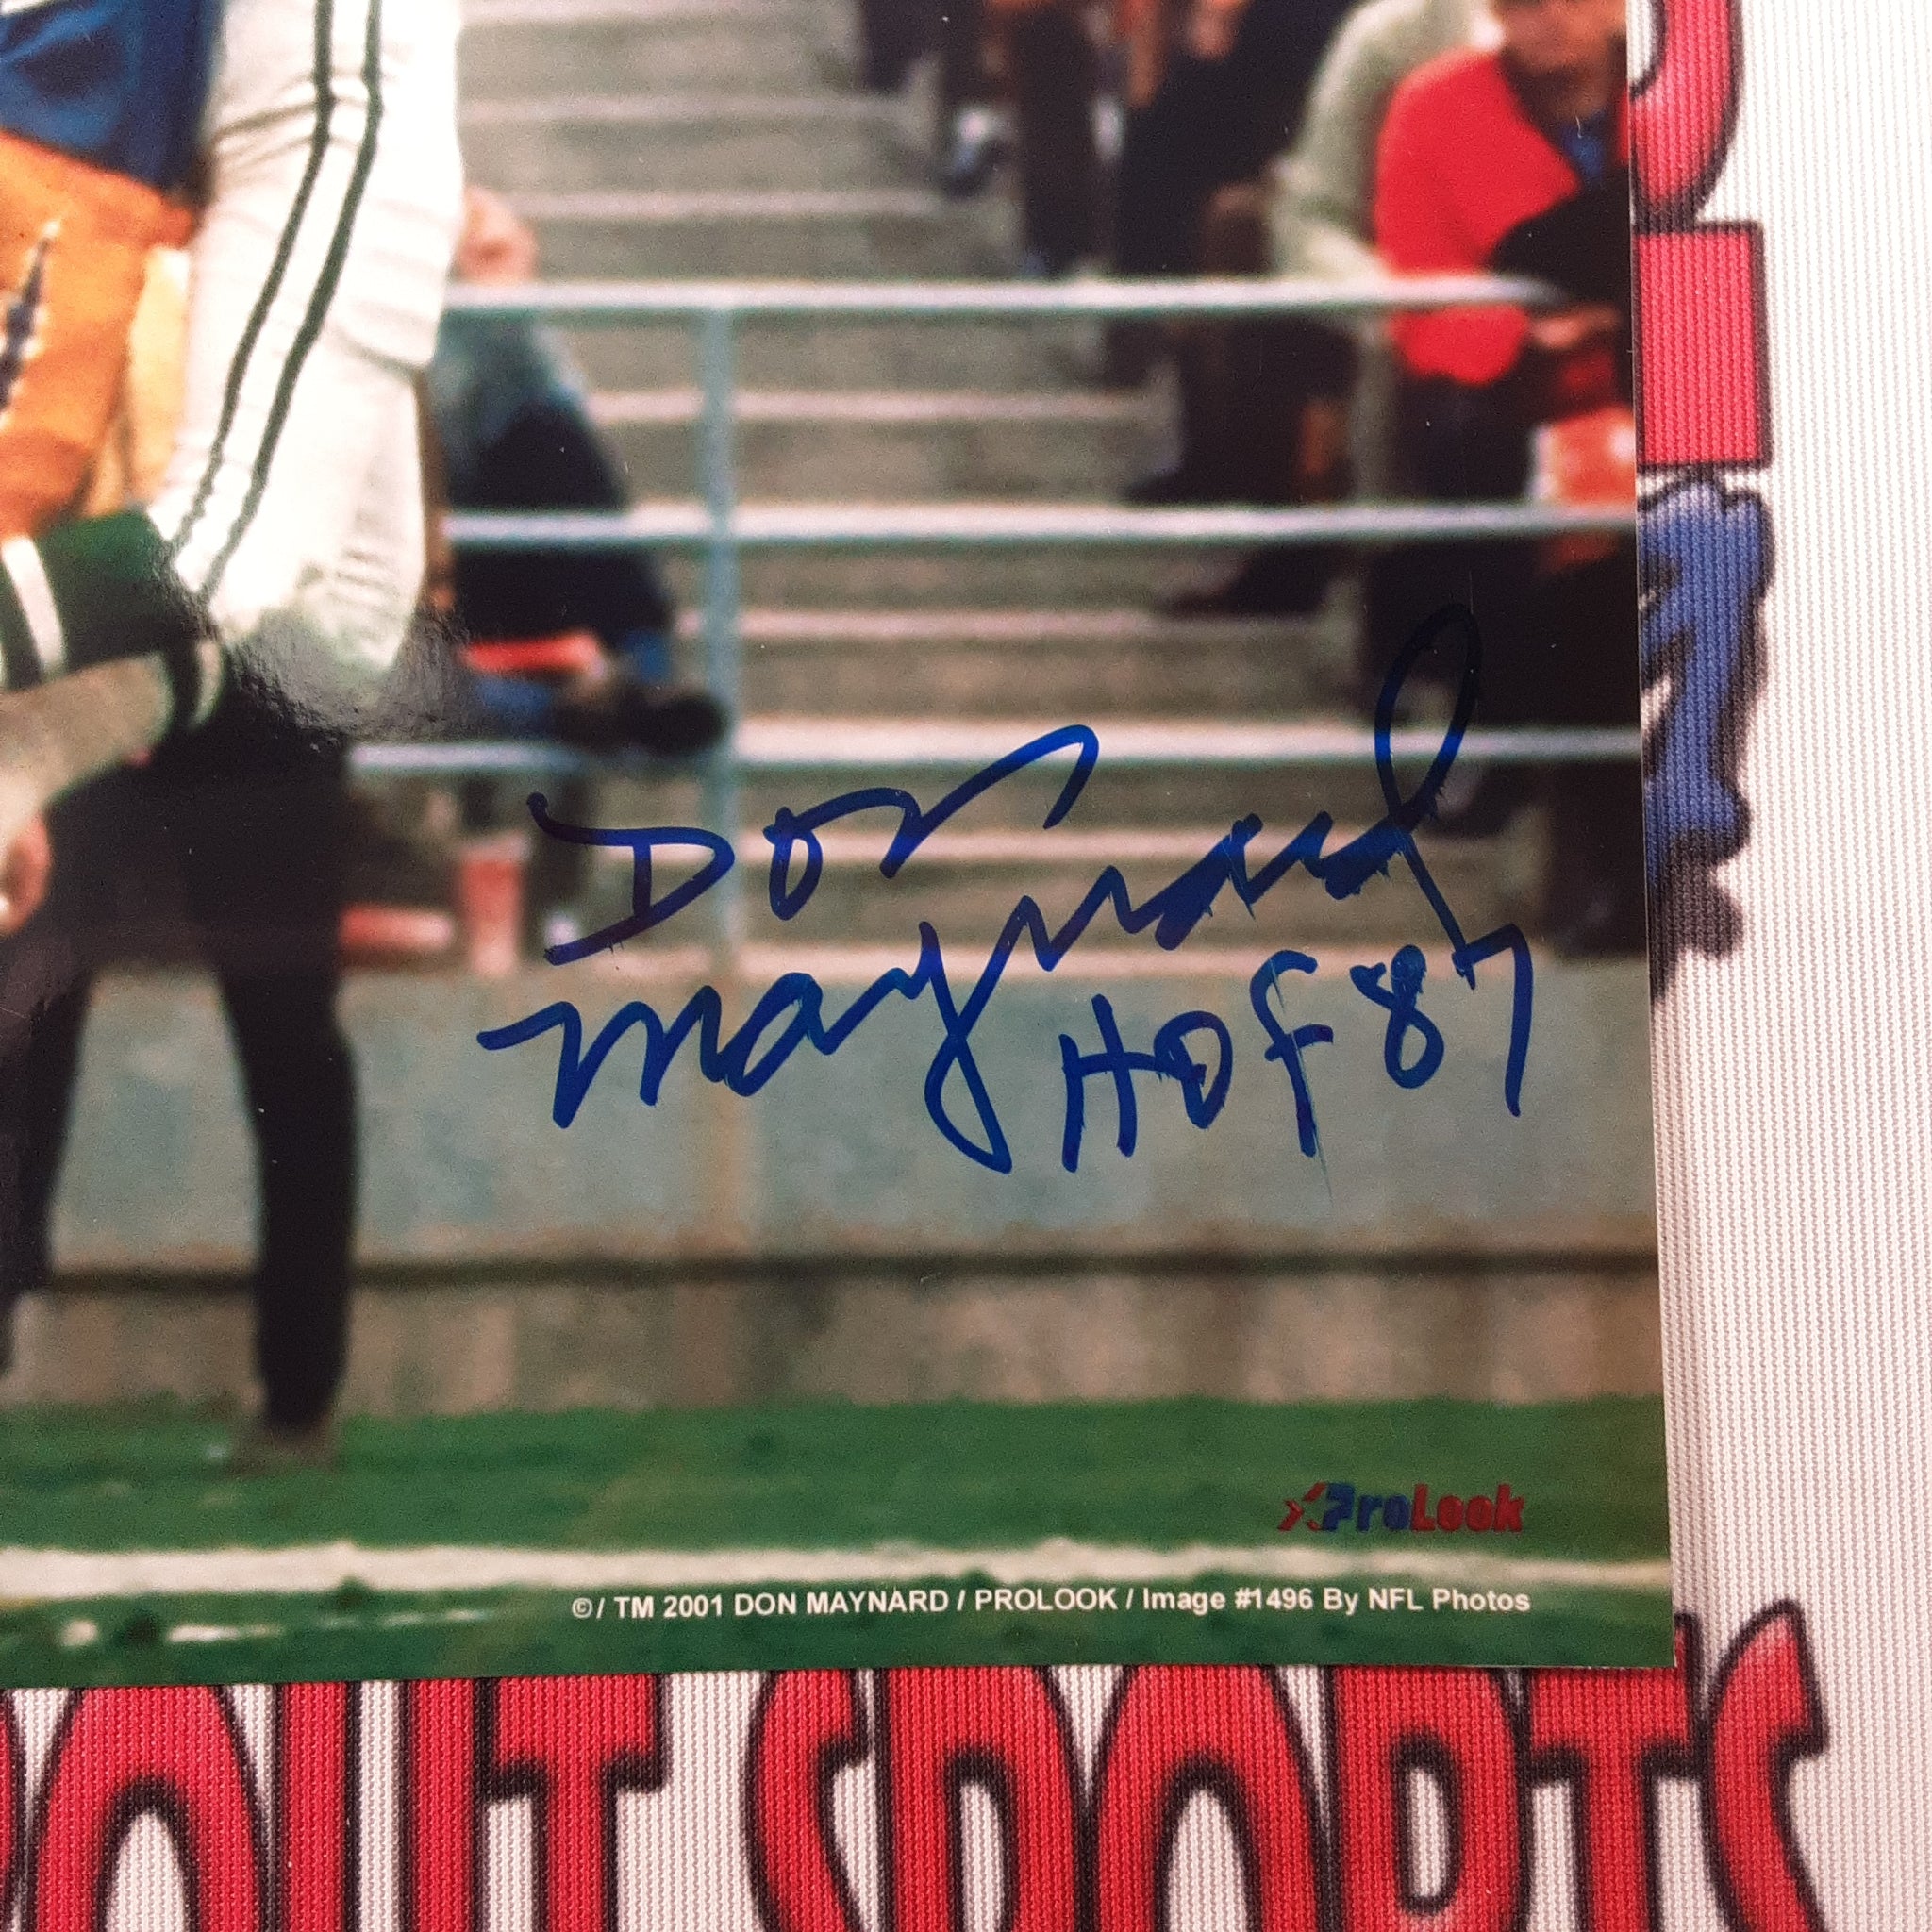 Don Maynard Authentic Signed 8x10 Photo Autographed PSA.